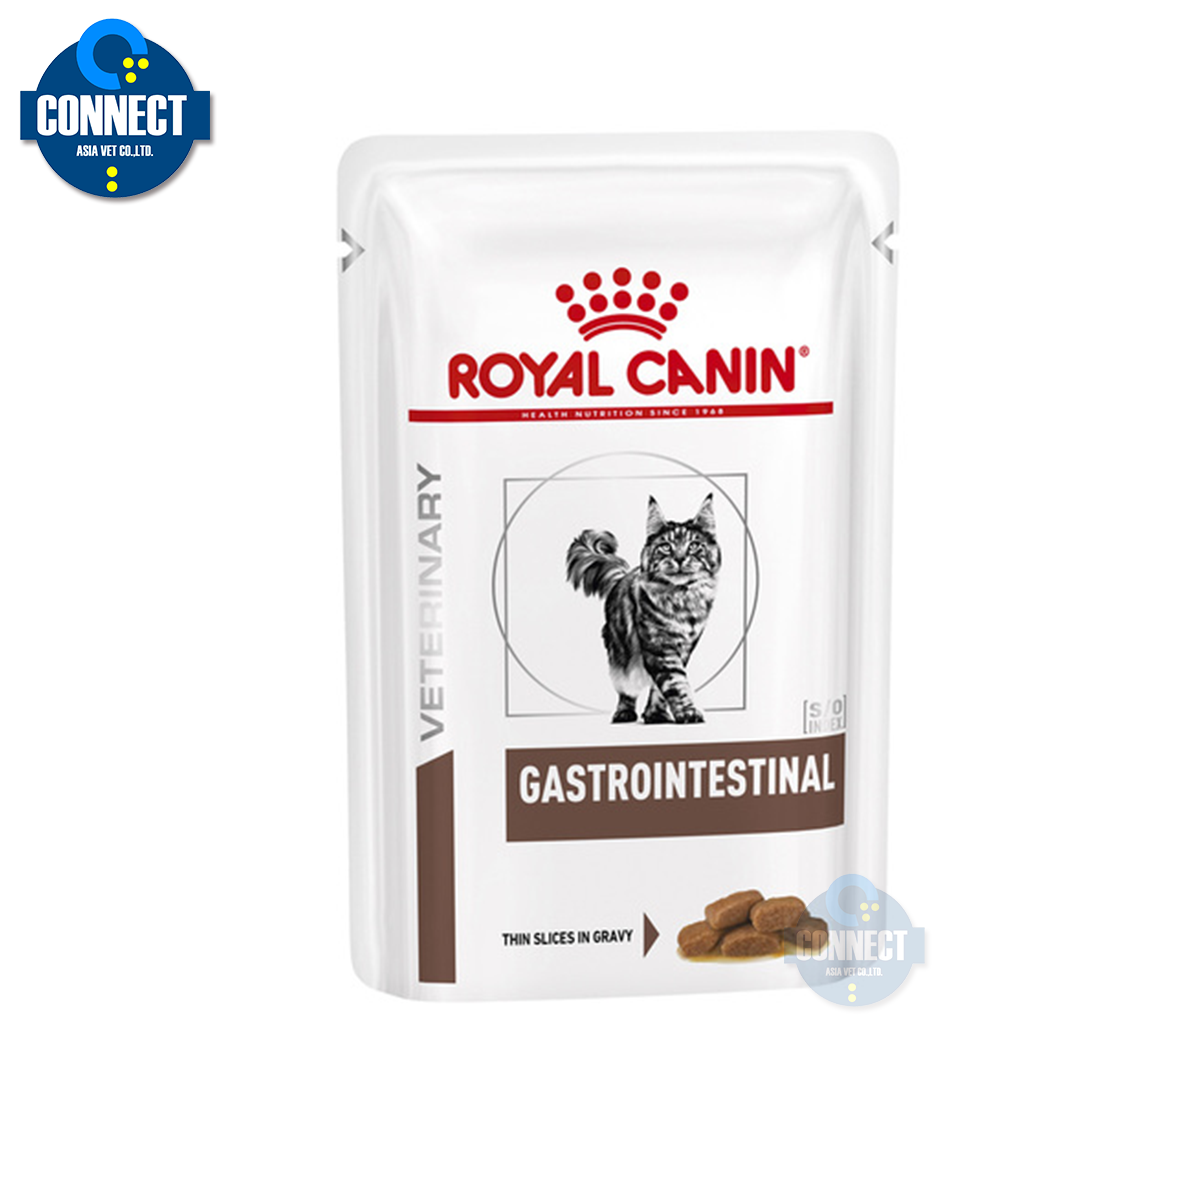 Royal Canin Gastrointestinal ( 85 กรัม ) จำนวน 12 ซอง